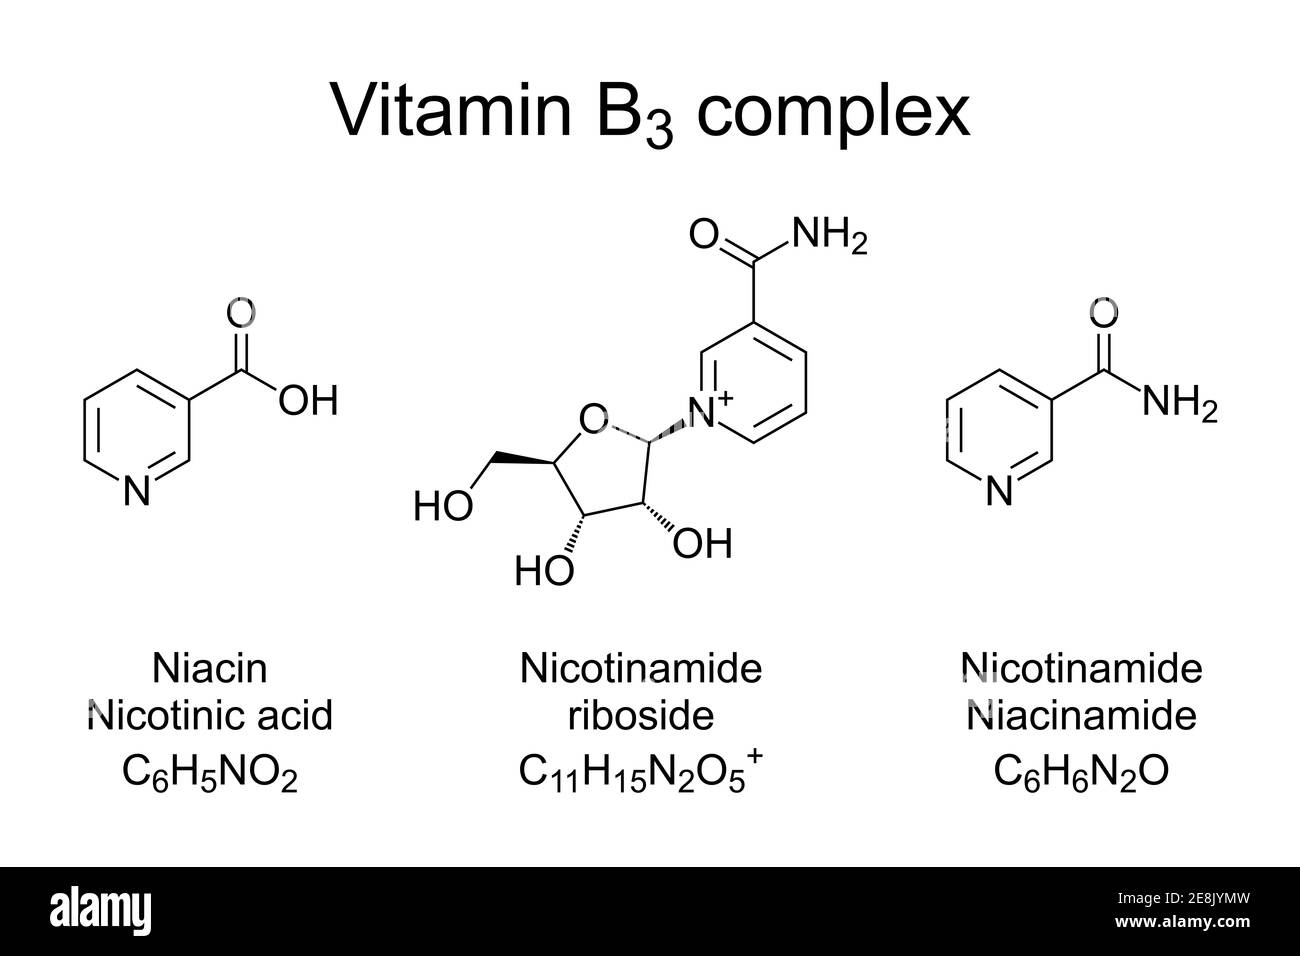 Complexe de vitamine B3, formules chimiques. Nicotinamide, niacine et riboside de nicotinamide, les trois vitamères de la vitamine B3. Banque D'Images